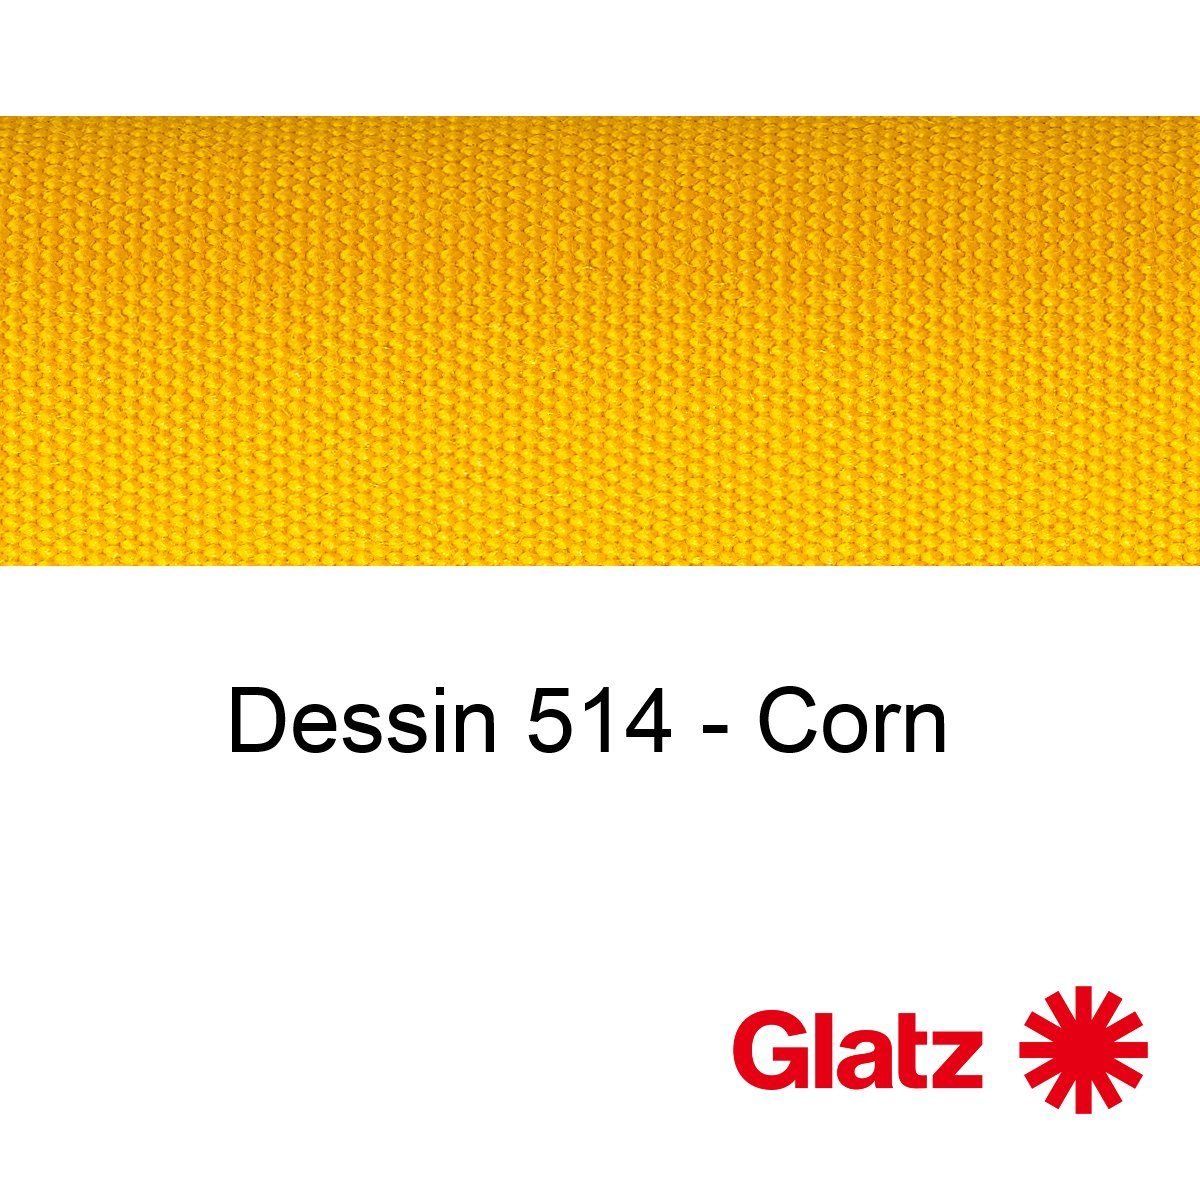 GLATZ Stoffmuster Dessin 514 Corn